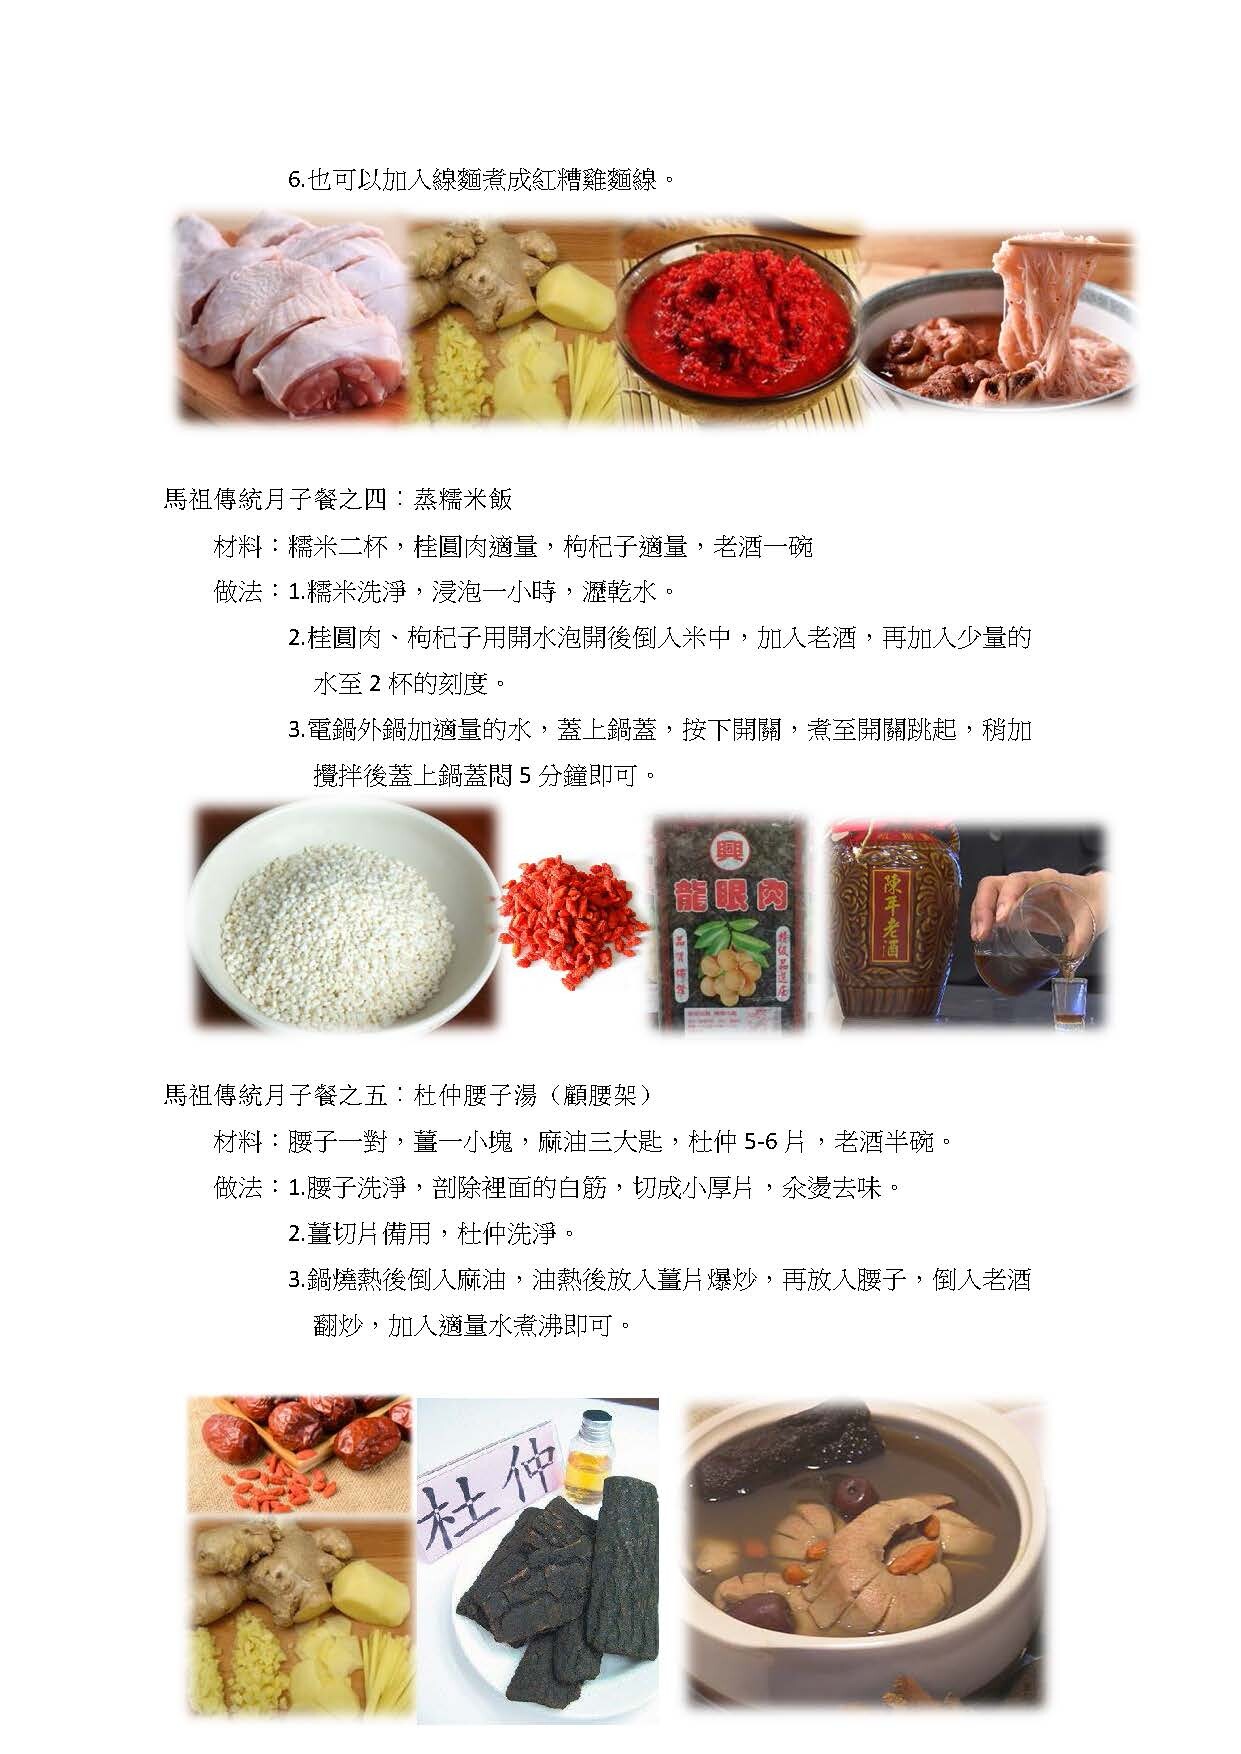 馬祖傳統月子餐─蒸糯米飯